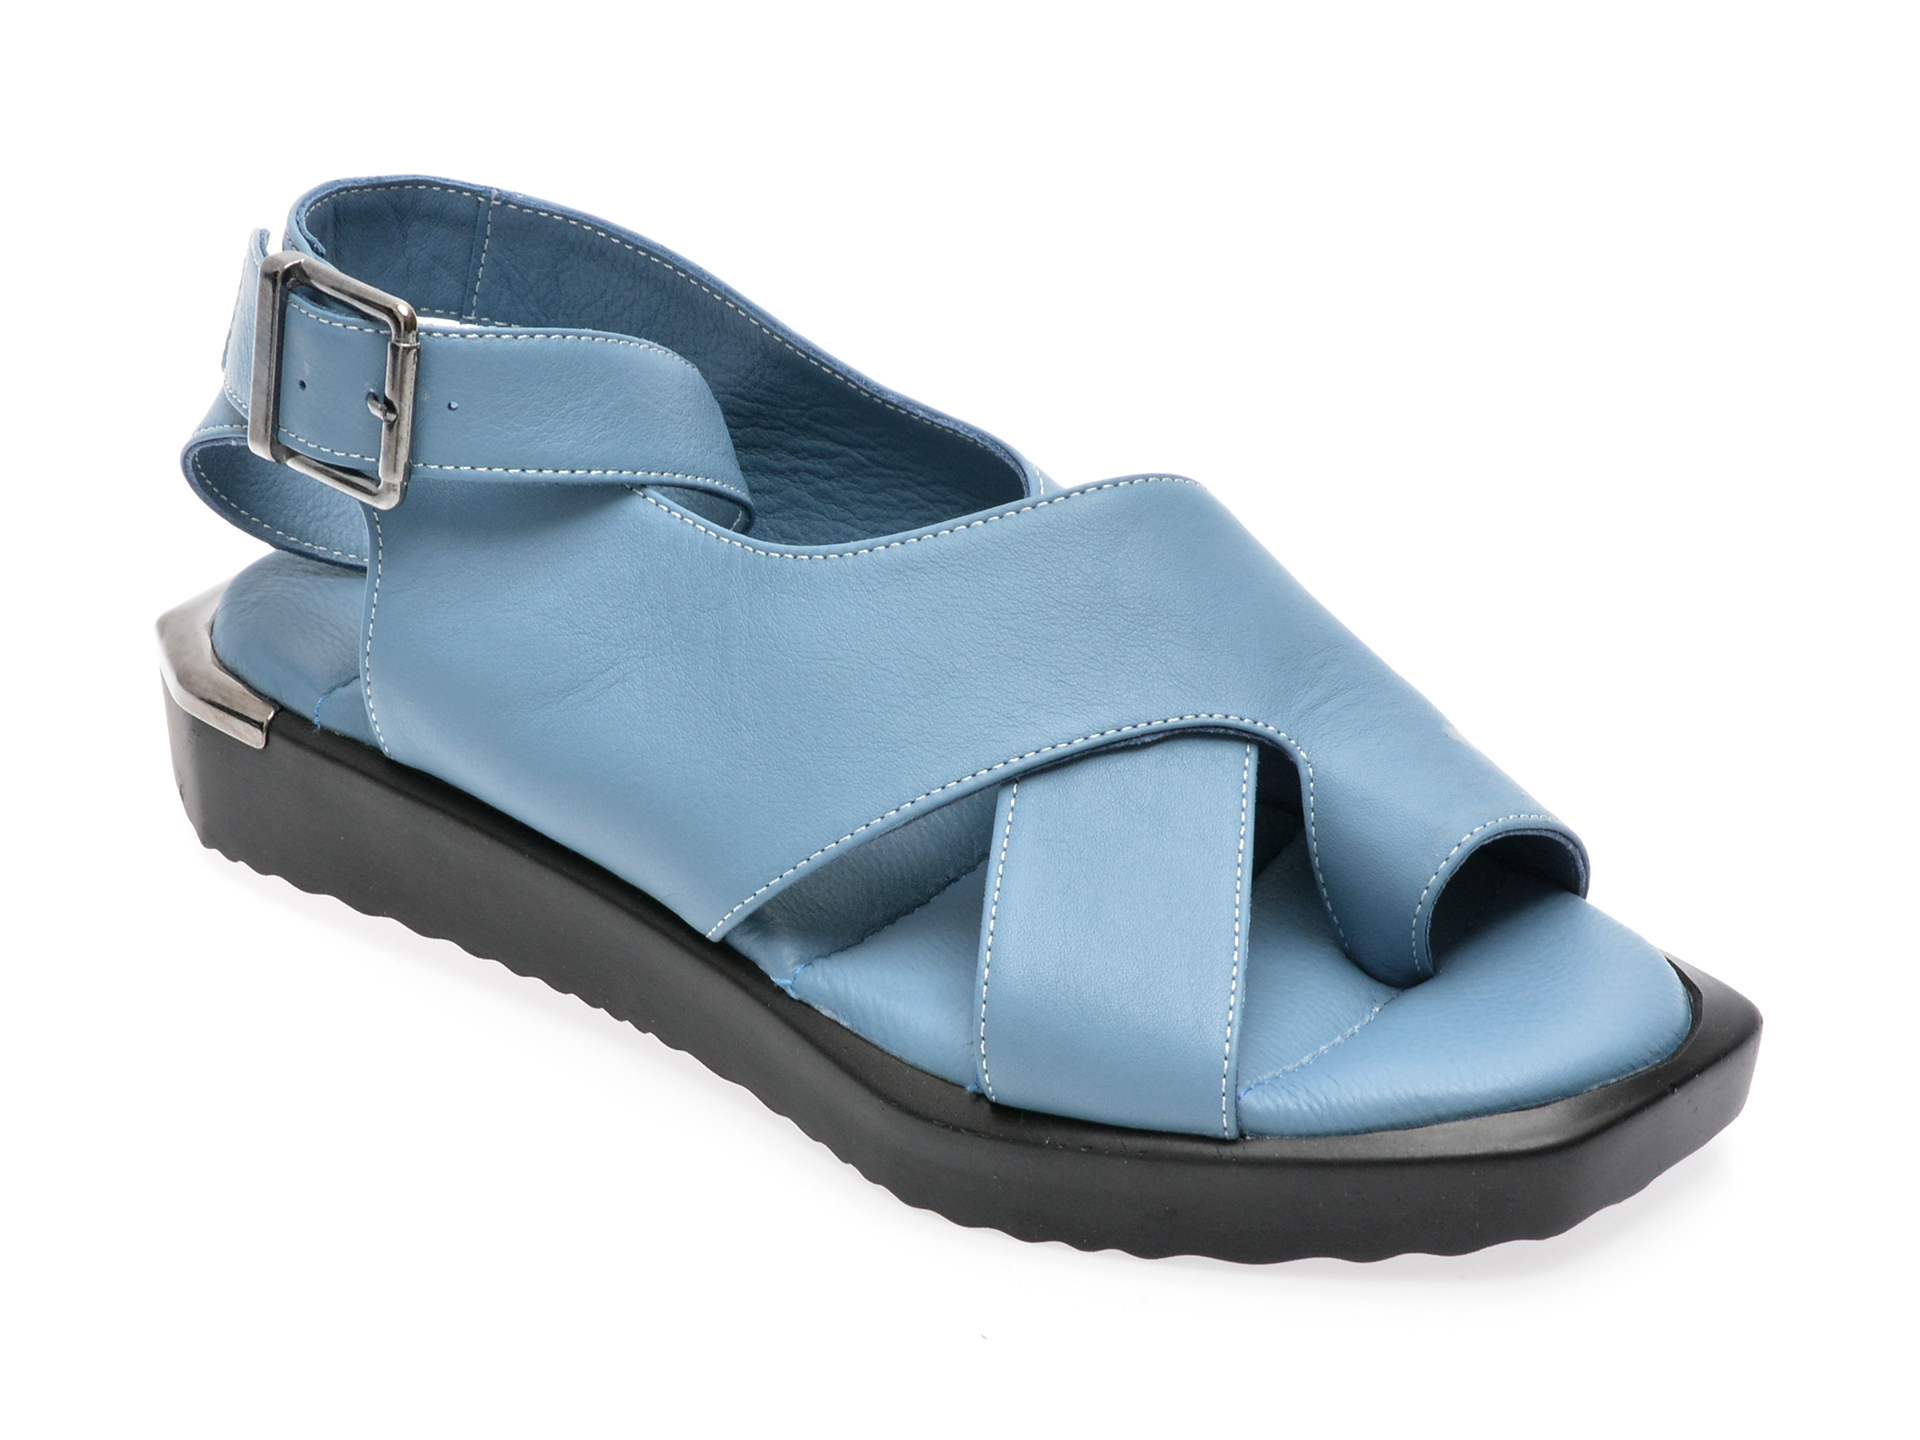 Sandale EMANI albastre, 340, din piele naturala /femei/sandale